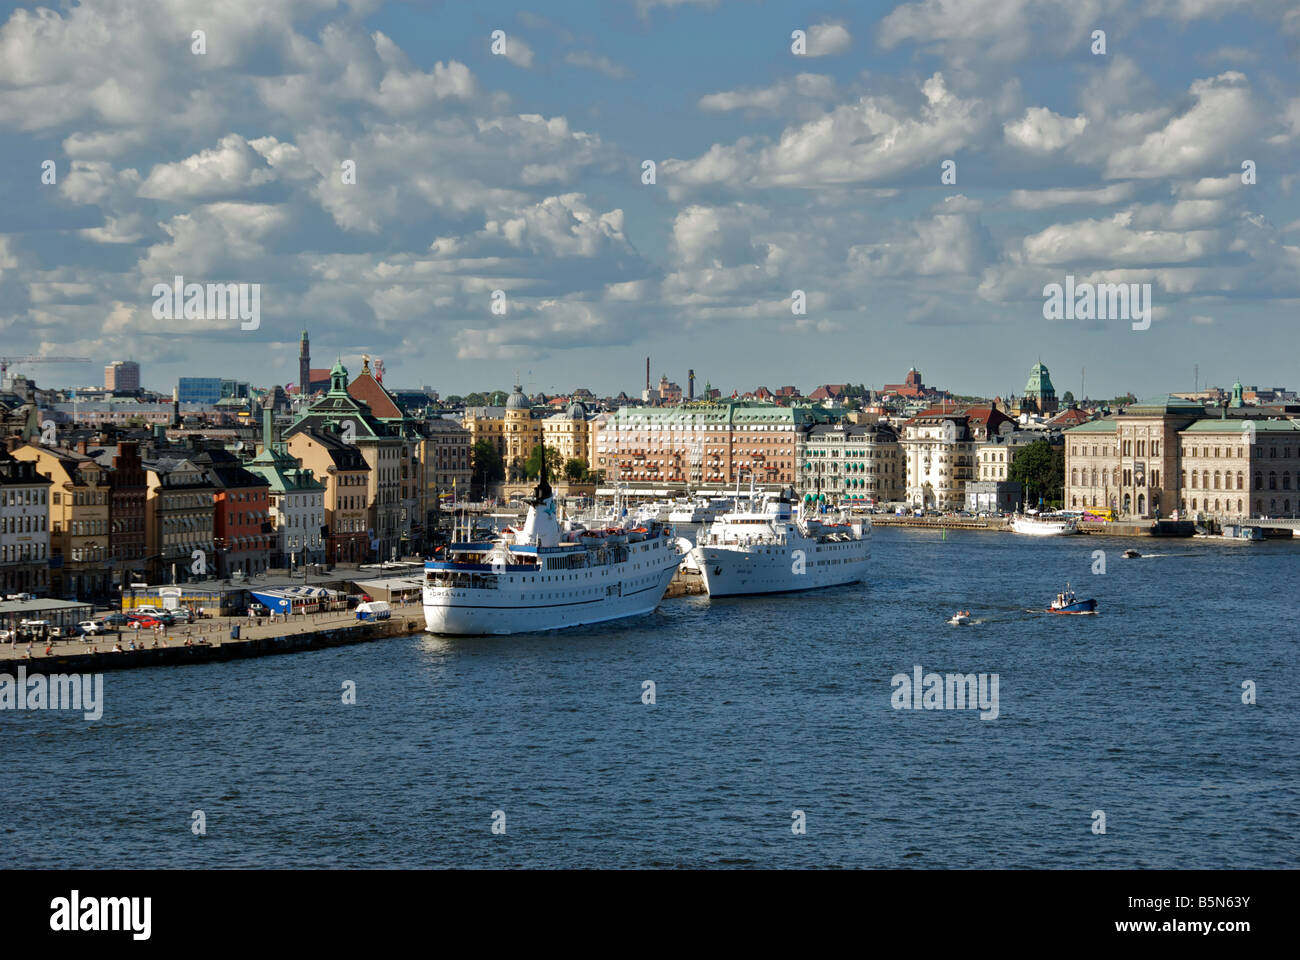 Vue panoramique sur le port de Stockholm Suède Stockholm Södermalm Banque D'Images